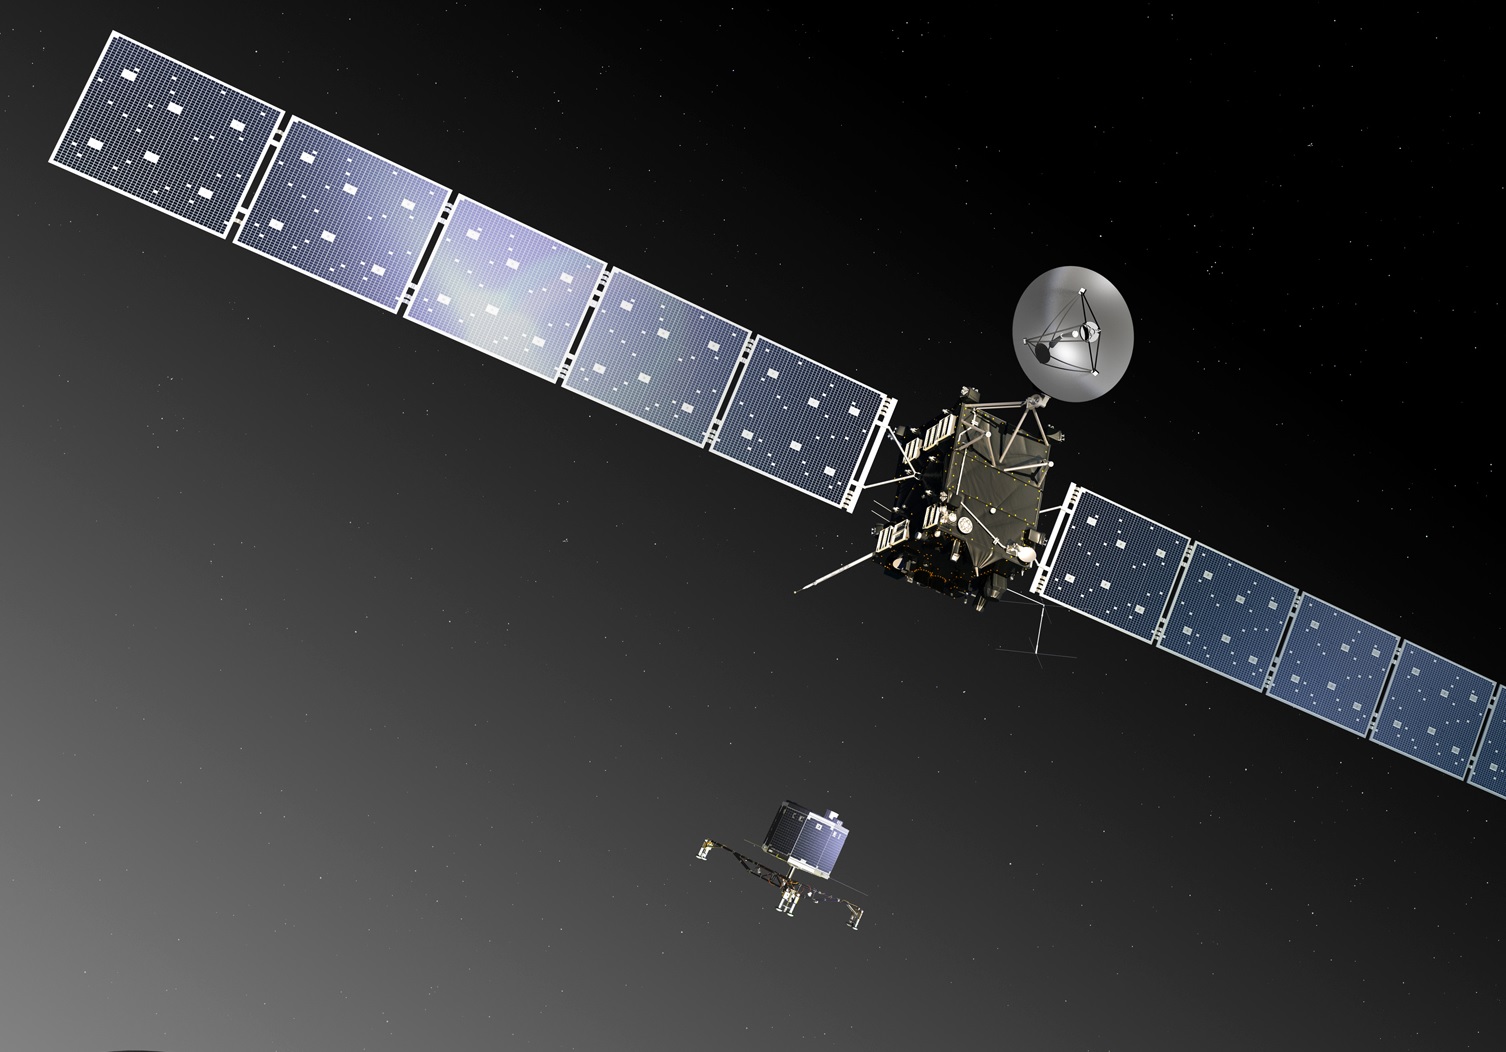 Місія Rosetta: 20 років старту дослідницького зонда до комети Чурюмова-Герасименко